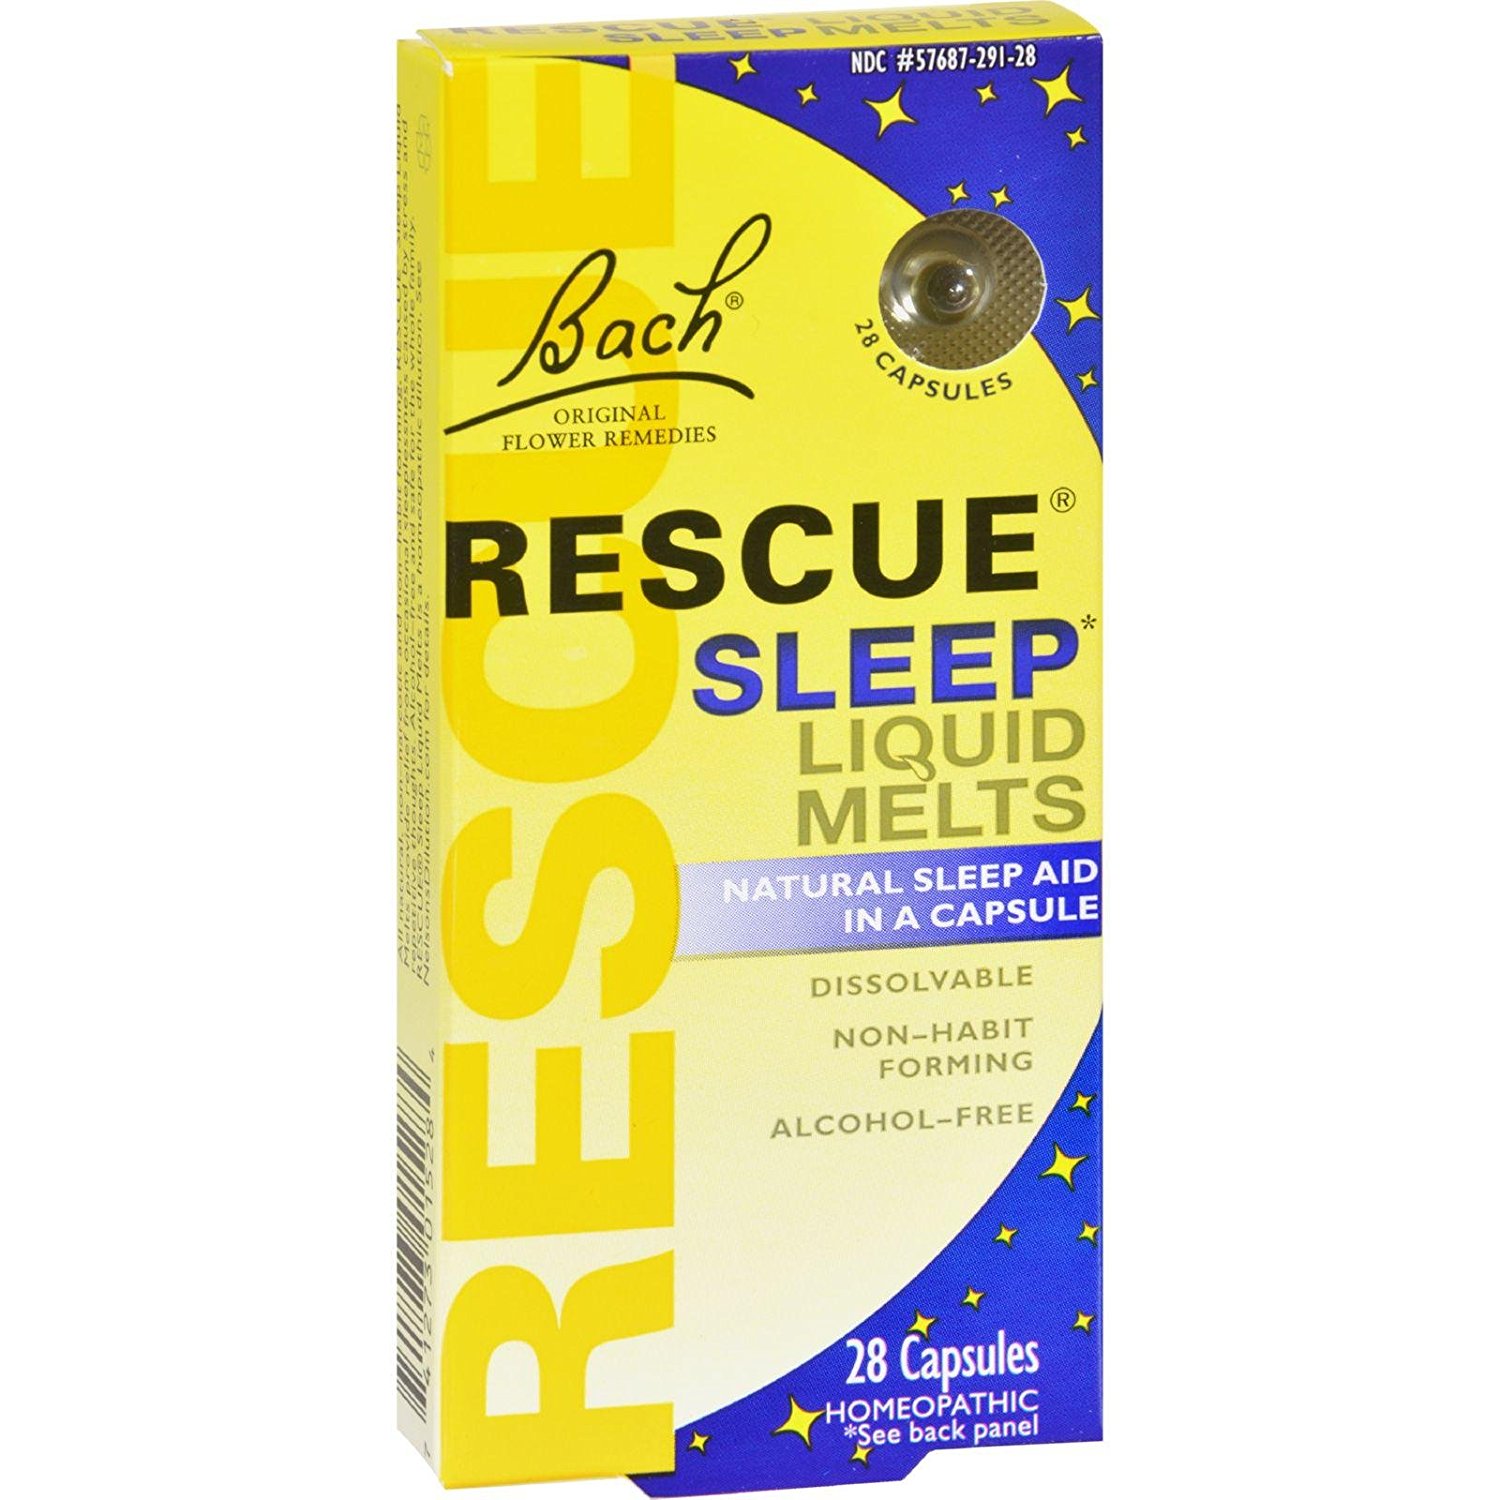 Rescue Sleep Melts $12 